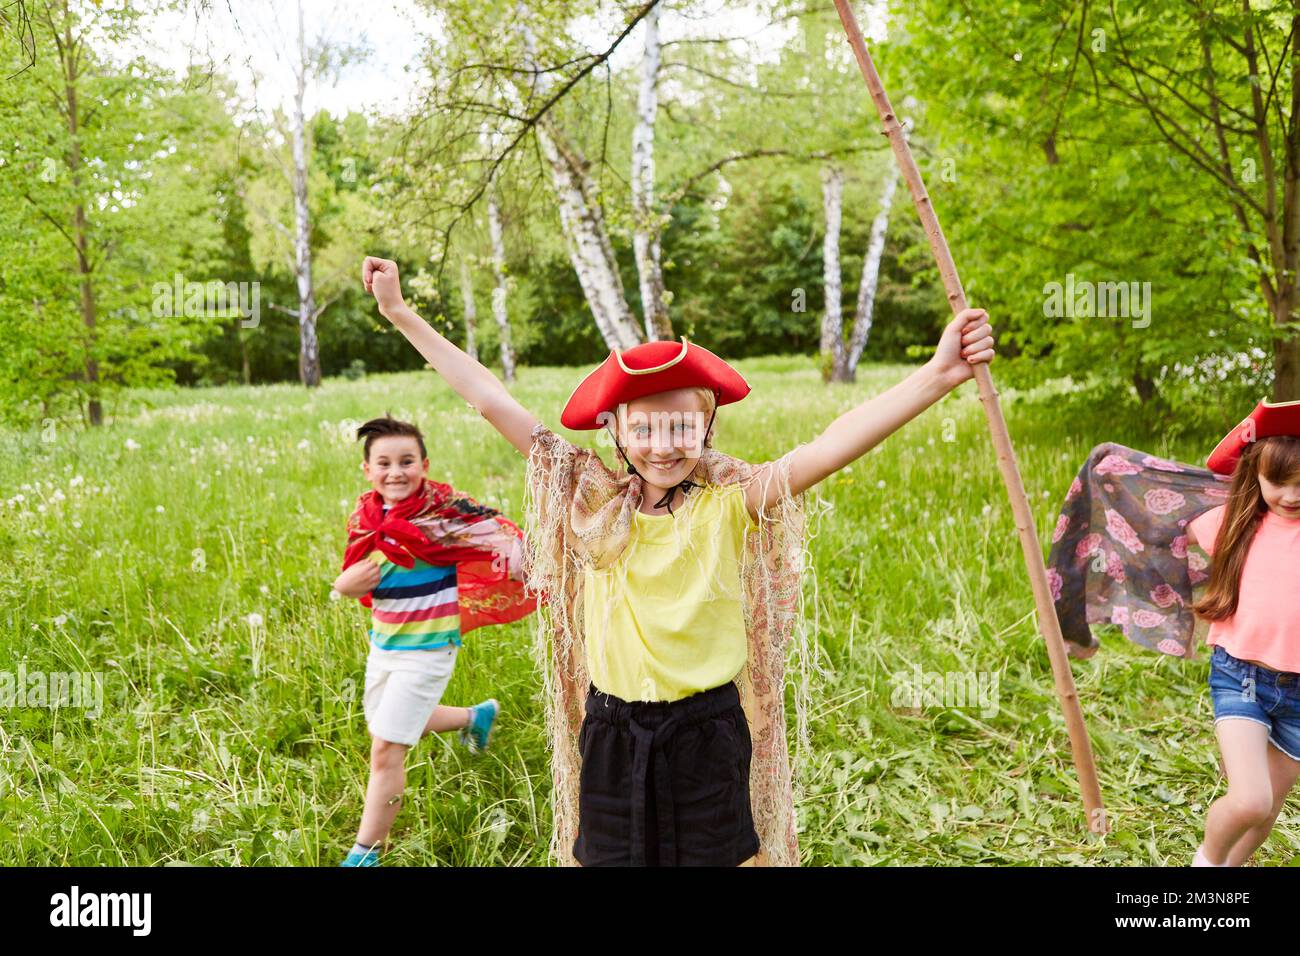 Porträt eines glücklichen Mädchens mit Tricornhut und Stäbchen, die von Freunden ausgestreckt im Gras stehen Stockfoto